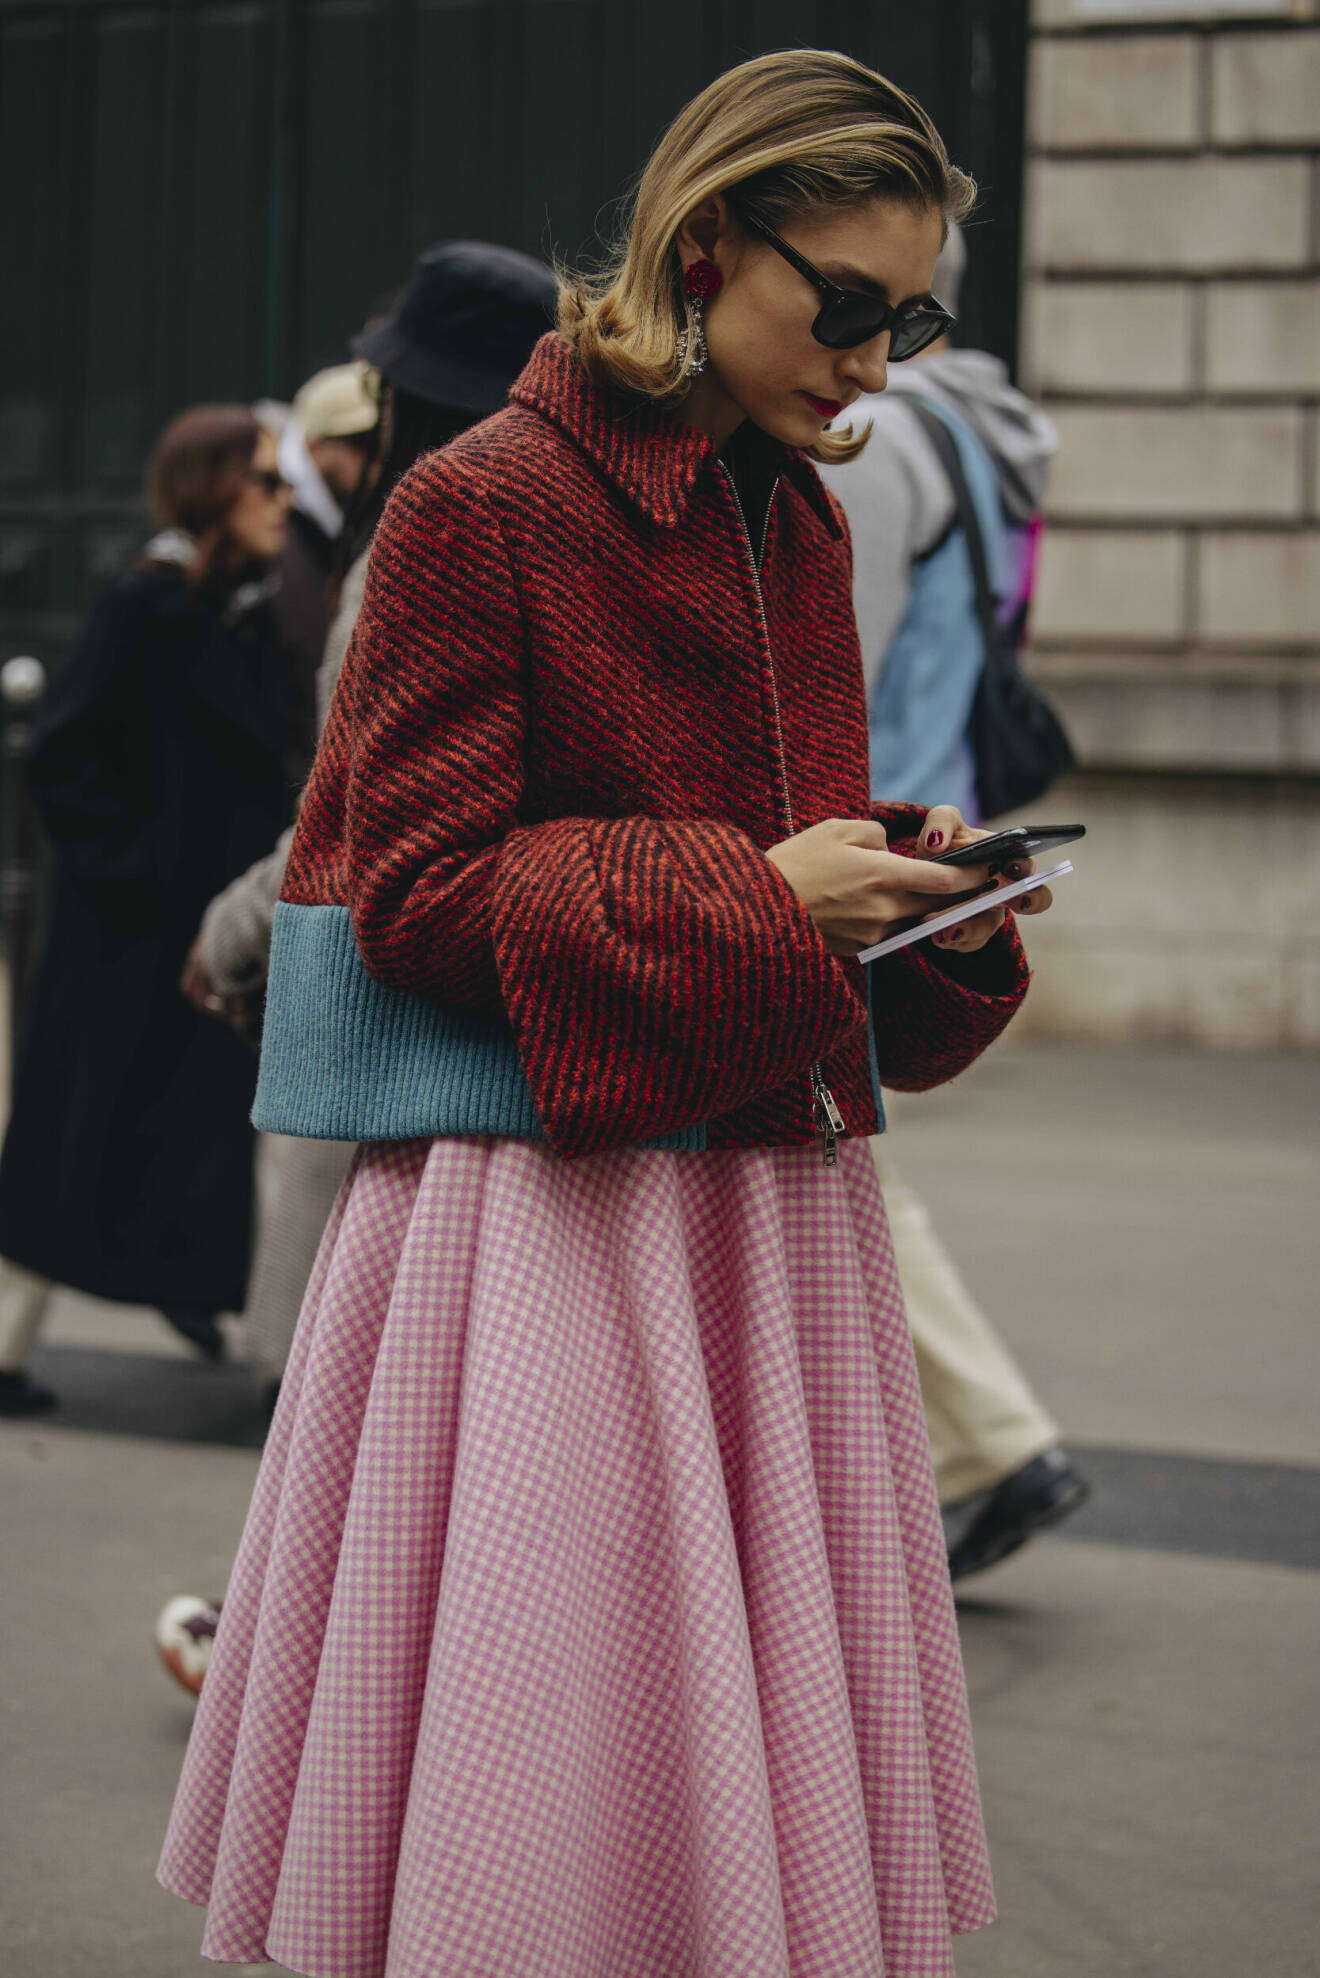 Stilfull look från Paris med a-linjeformad kjol.